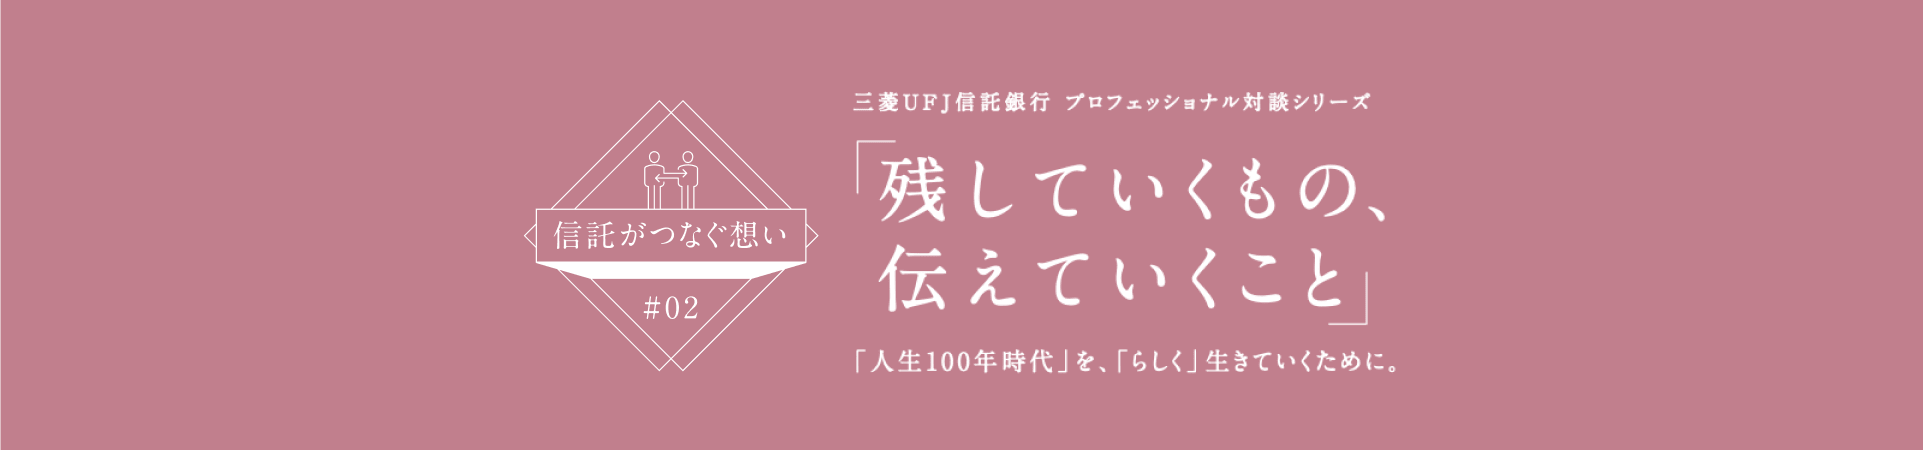 【信託がつなぐ想い #02】 三菱ＵＦＪ信託銀行 プロフェッショナル対談シリーズ 「残していくもの、伝えていくこと」 「人生100年時代」を、「らしく」生きていくために。